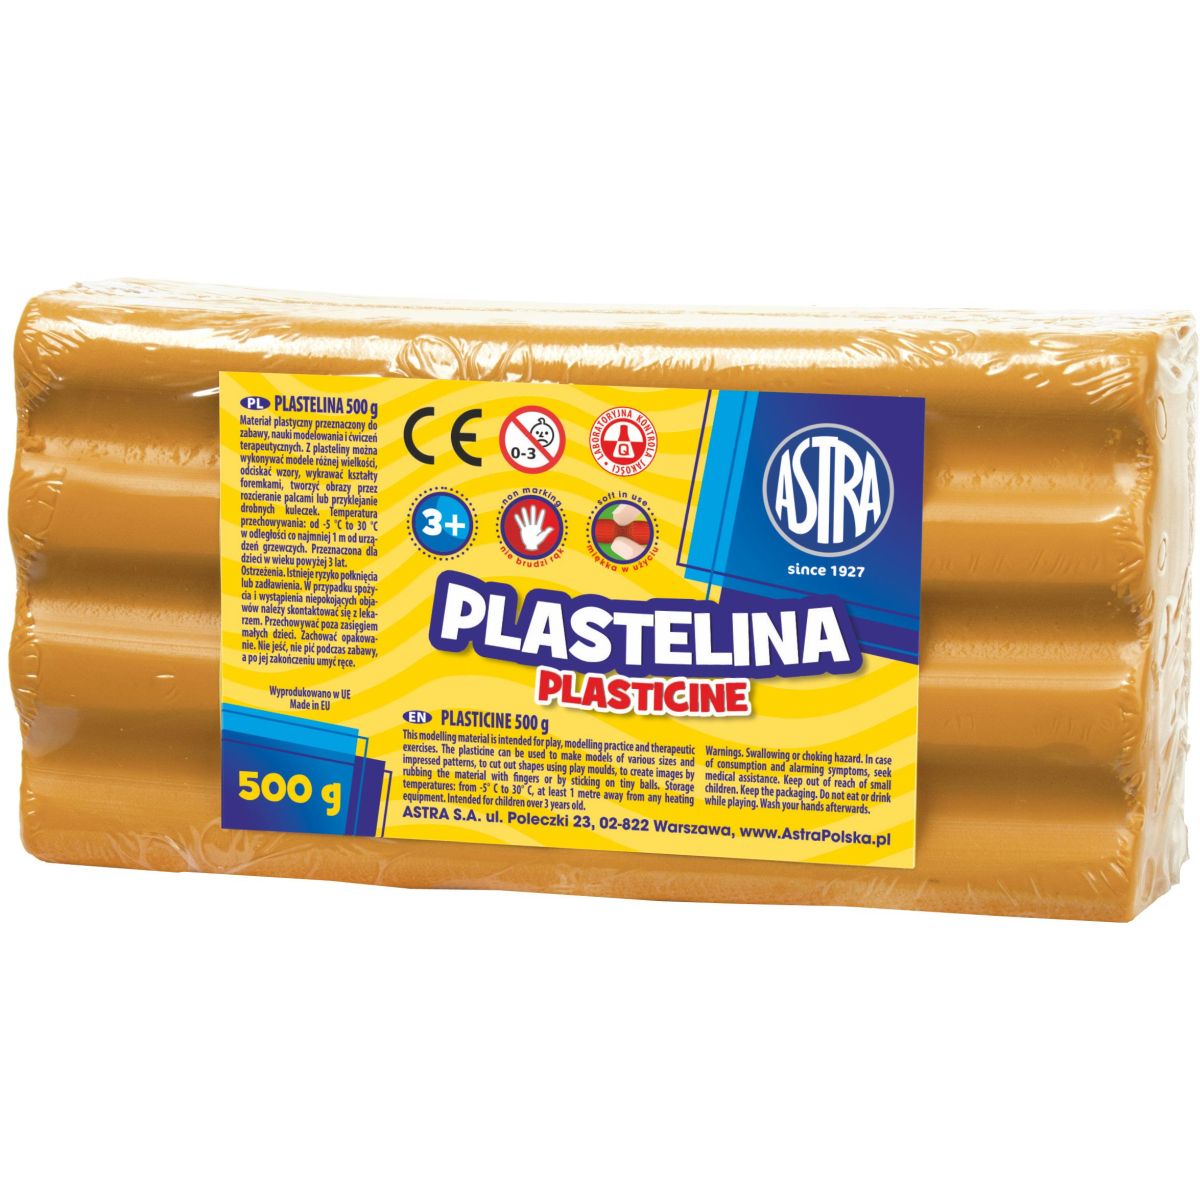 Plastelina Astra 1 kol. pomarańczowa 500g